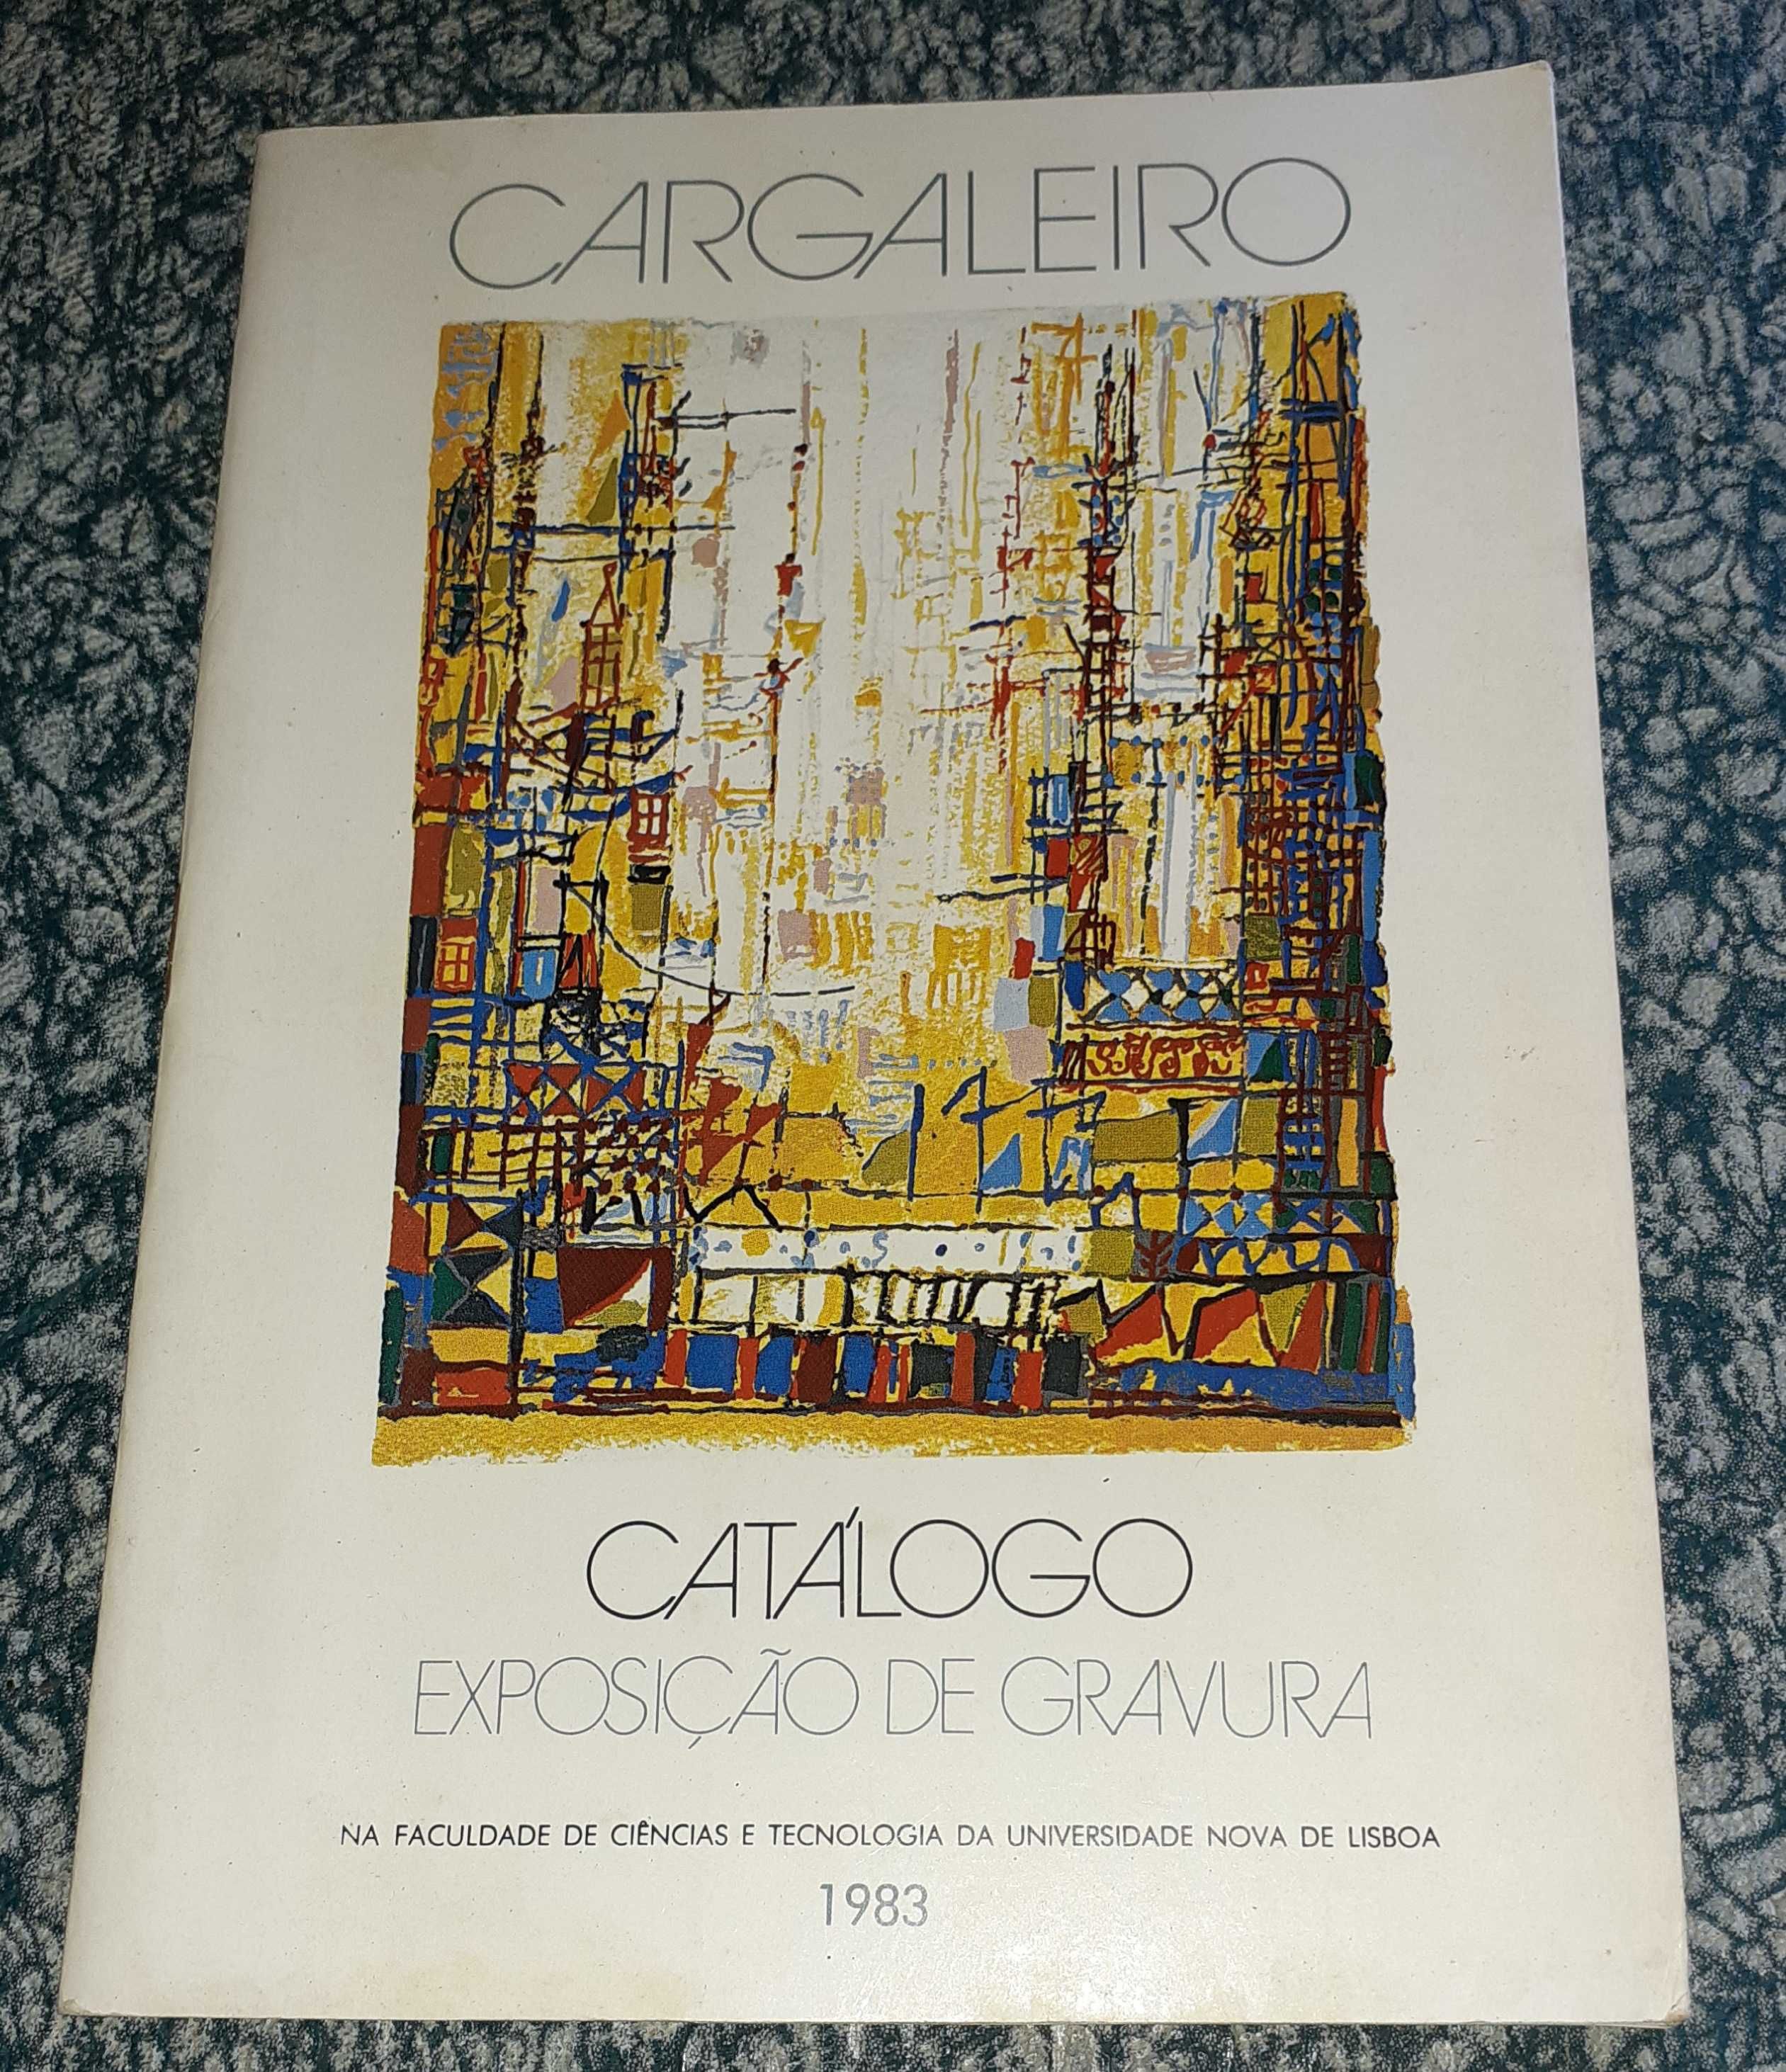 Catálogo- Cargaleiro 1983